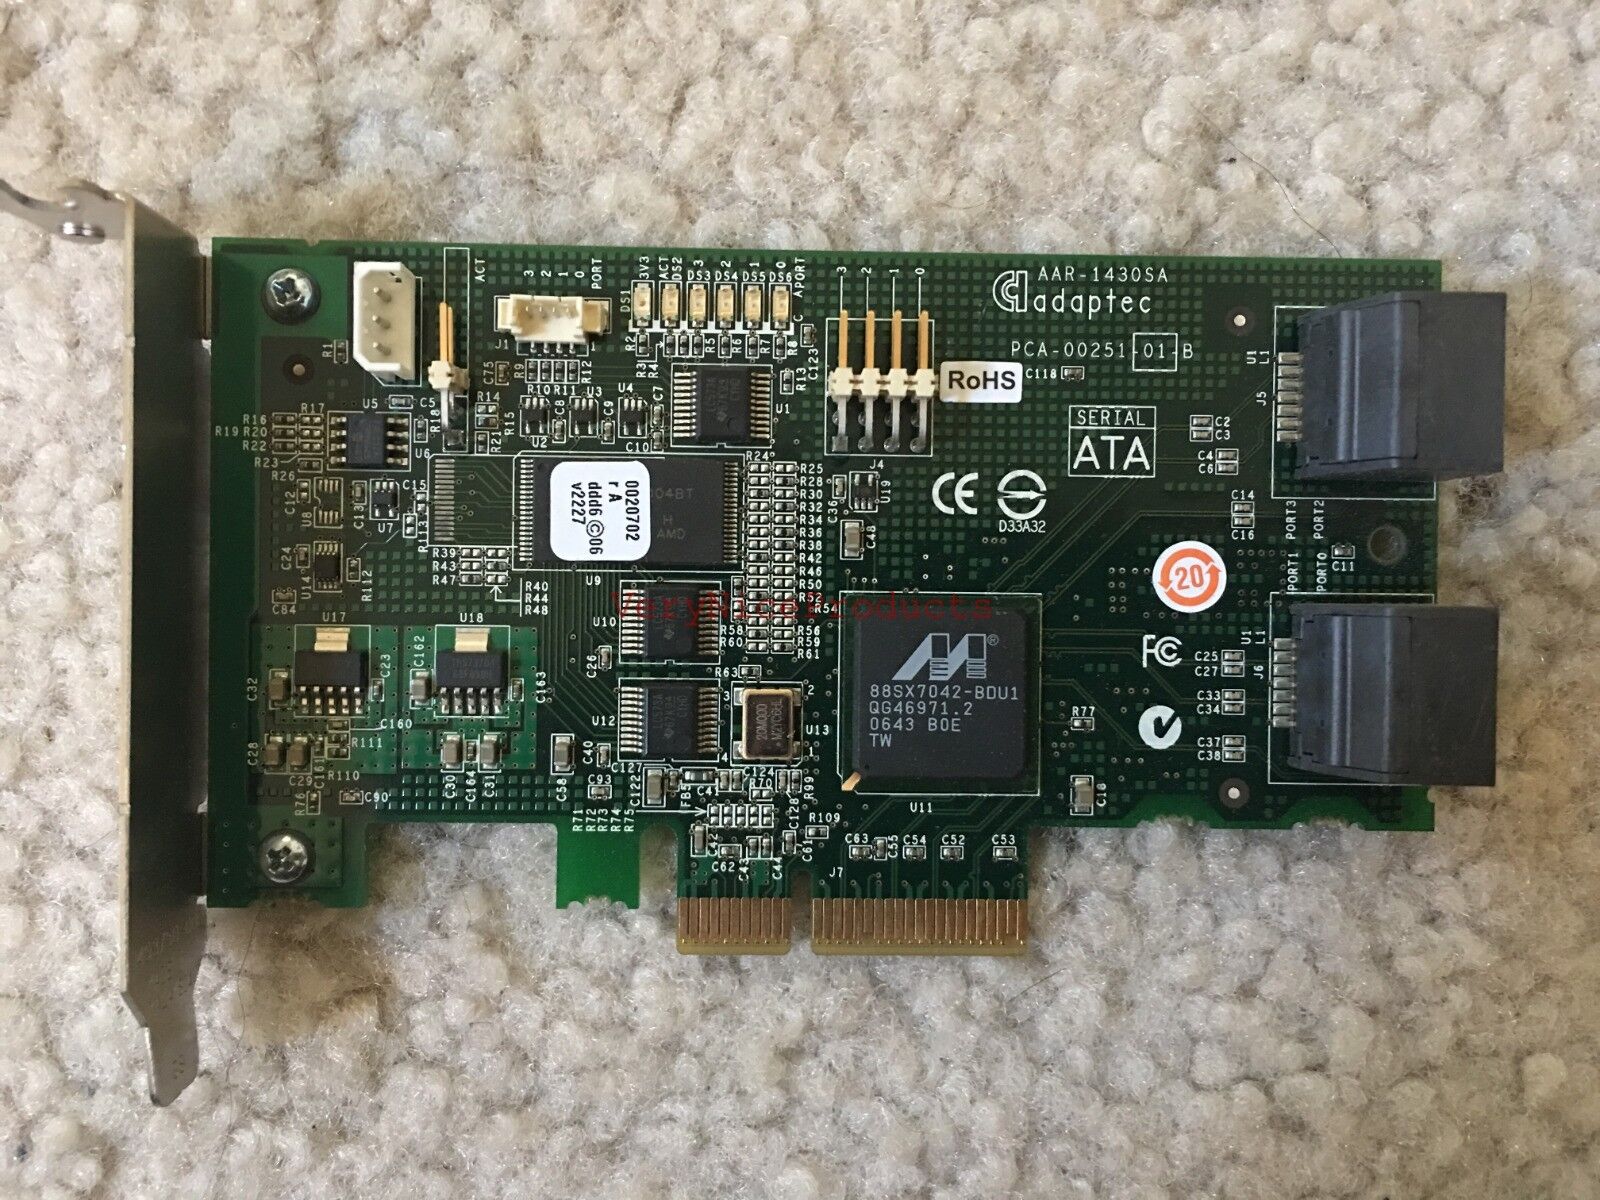 Adaptec AAR-1430SA 4-Port SATA RAID Controller Adapter Card PCI-e PCA-00251-01-B